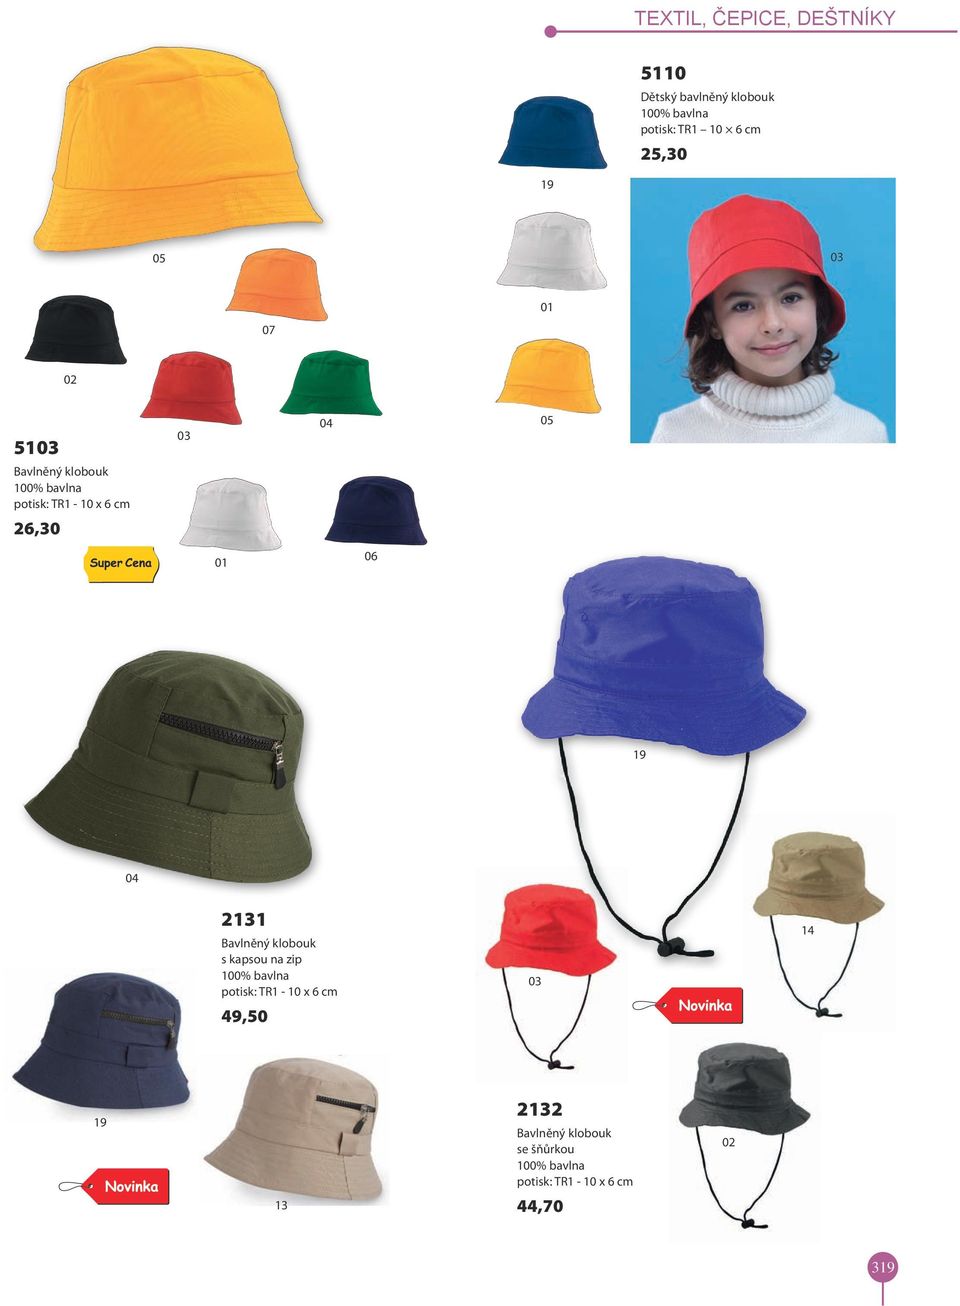 klobouk s kapsou na zip 100% bavlna potisk: TR1-10 x 6 cm 49,50 14 13